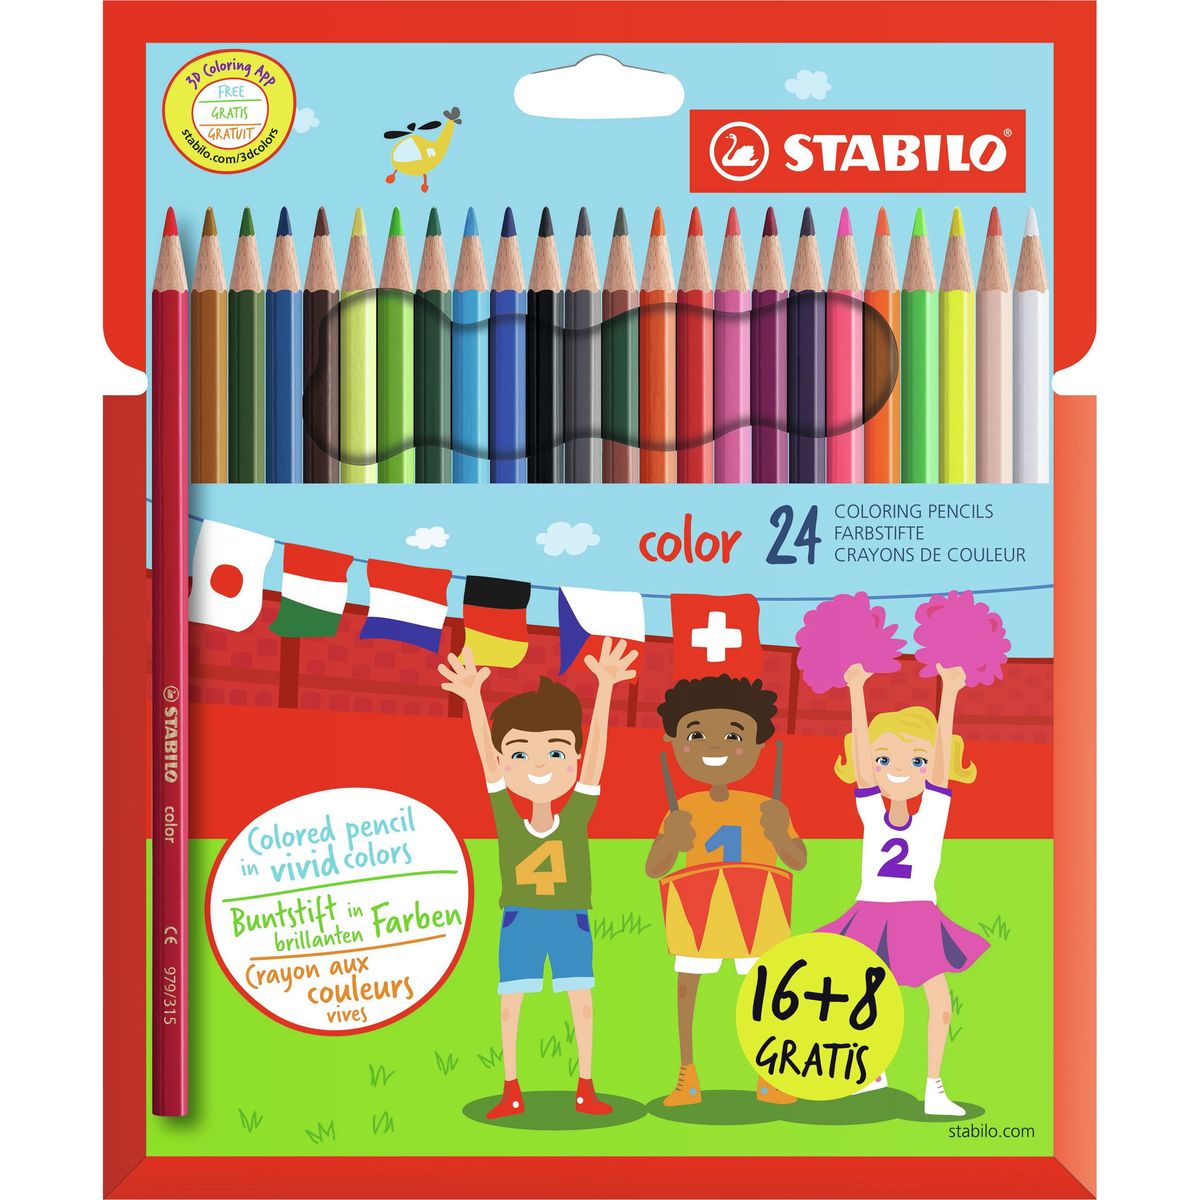 STABILO Crayons de couleur color 16+8 gratuit